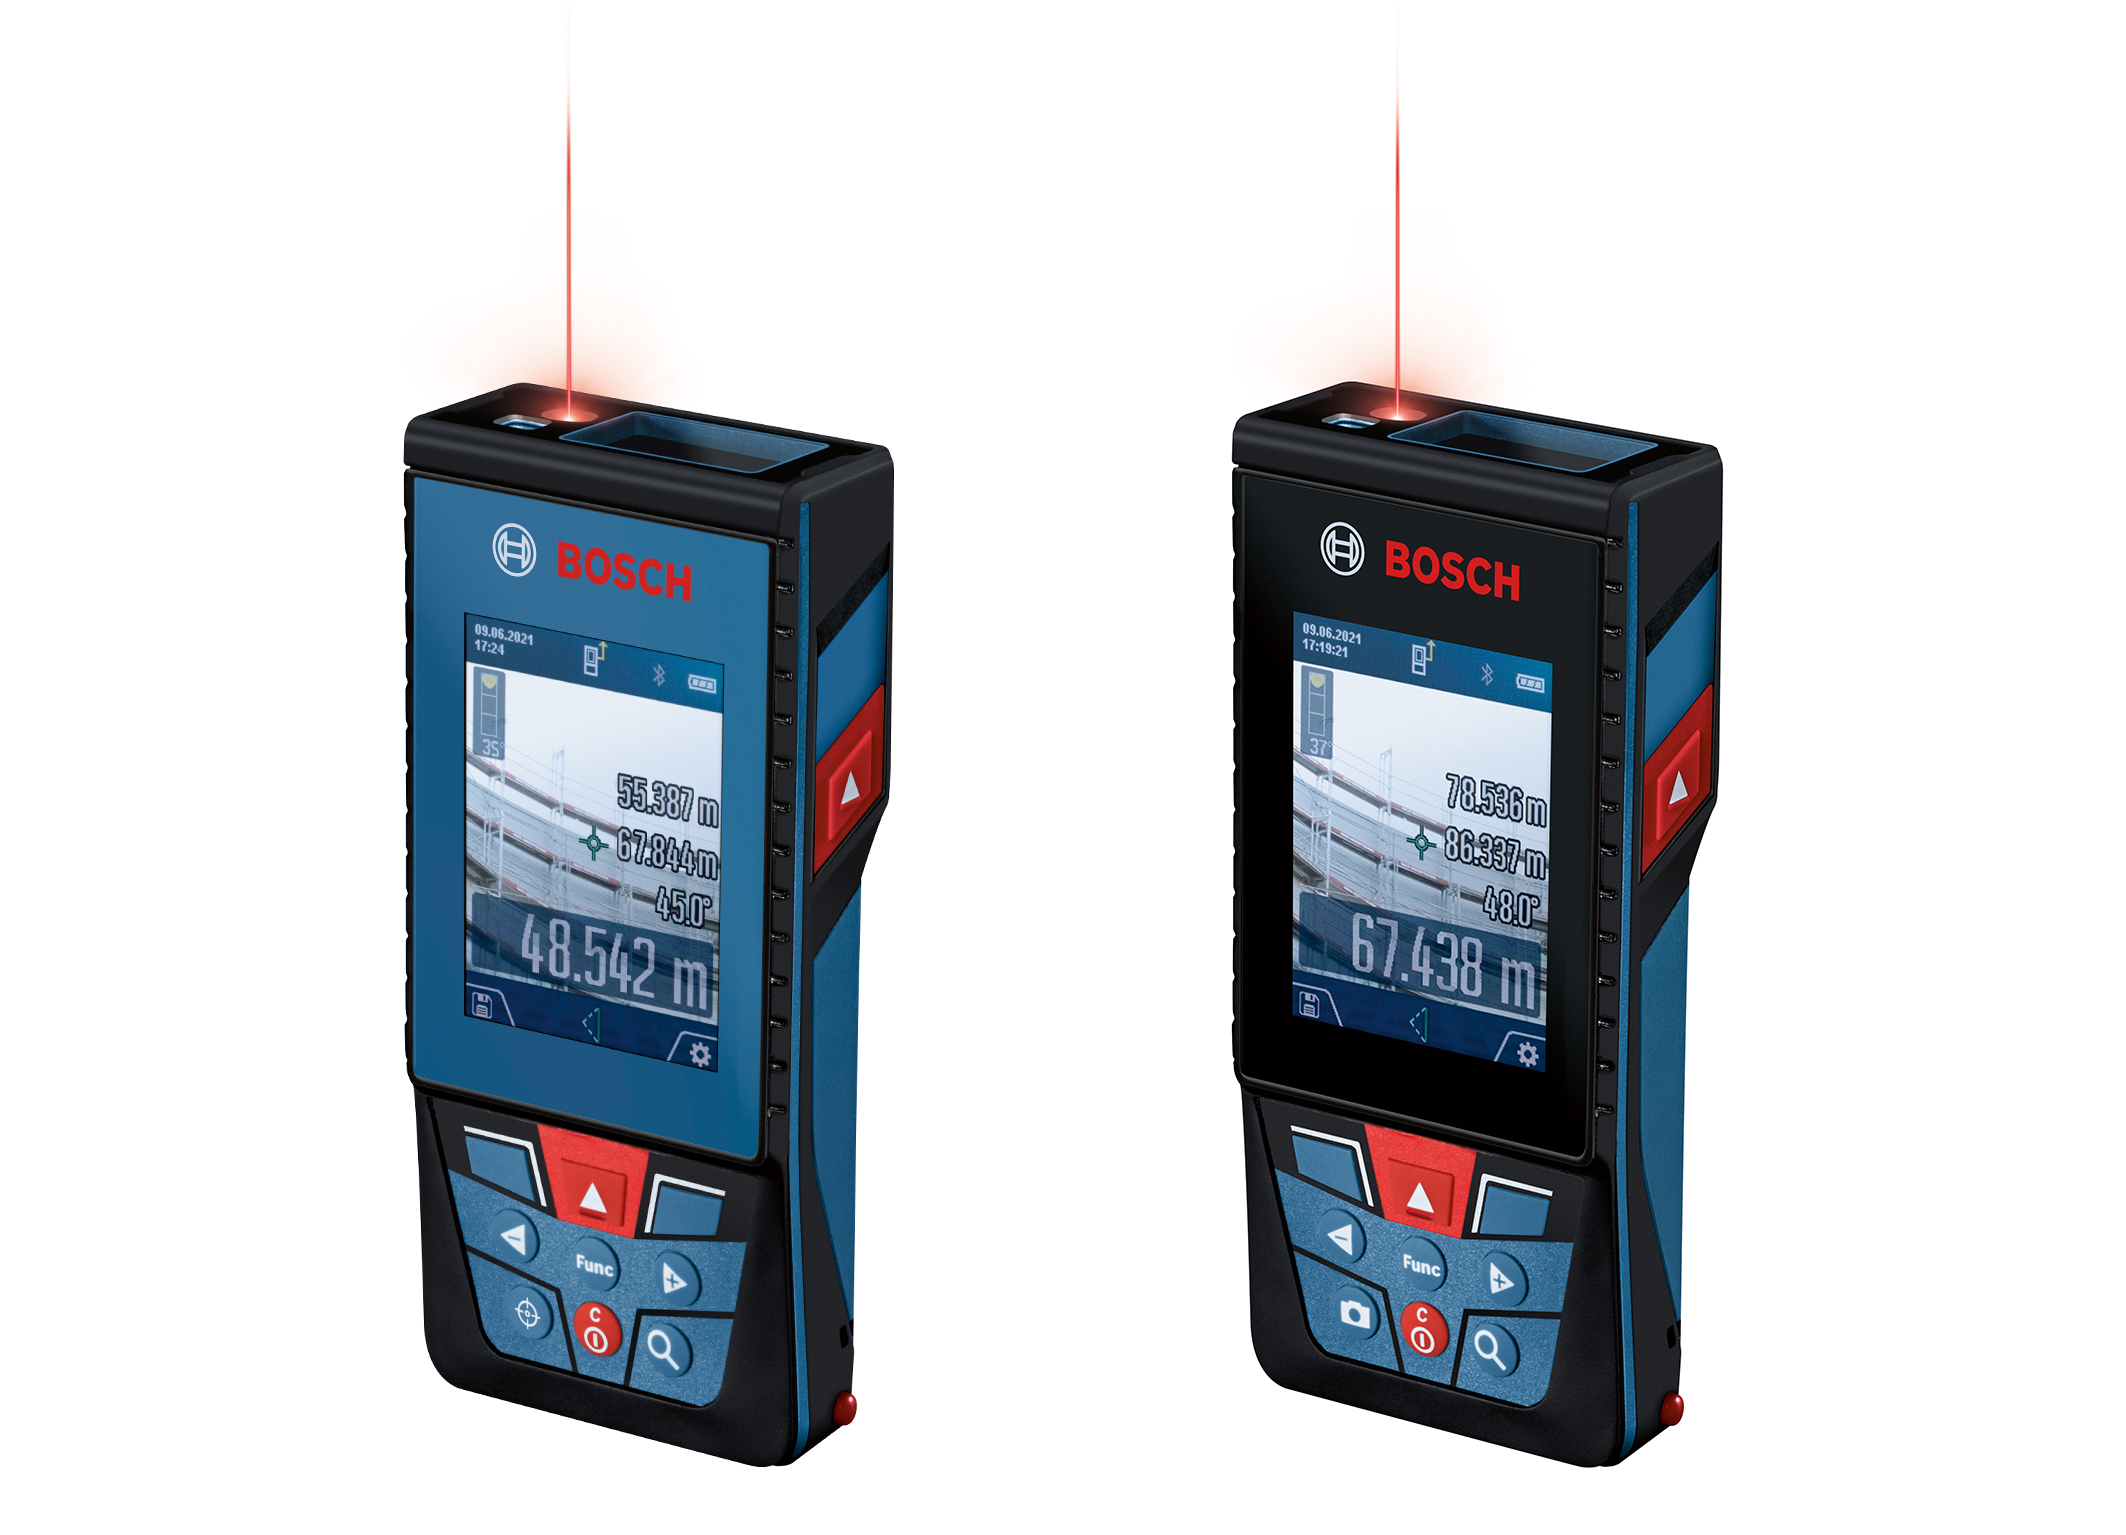 Hohe Präzision über Distanzen bis 150 Meter: Neue Bosch Laser-Entfernungsmesser mit Kamera